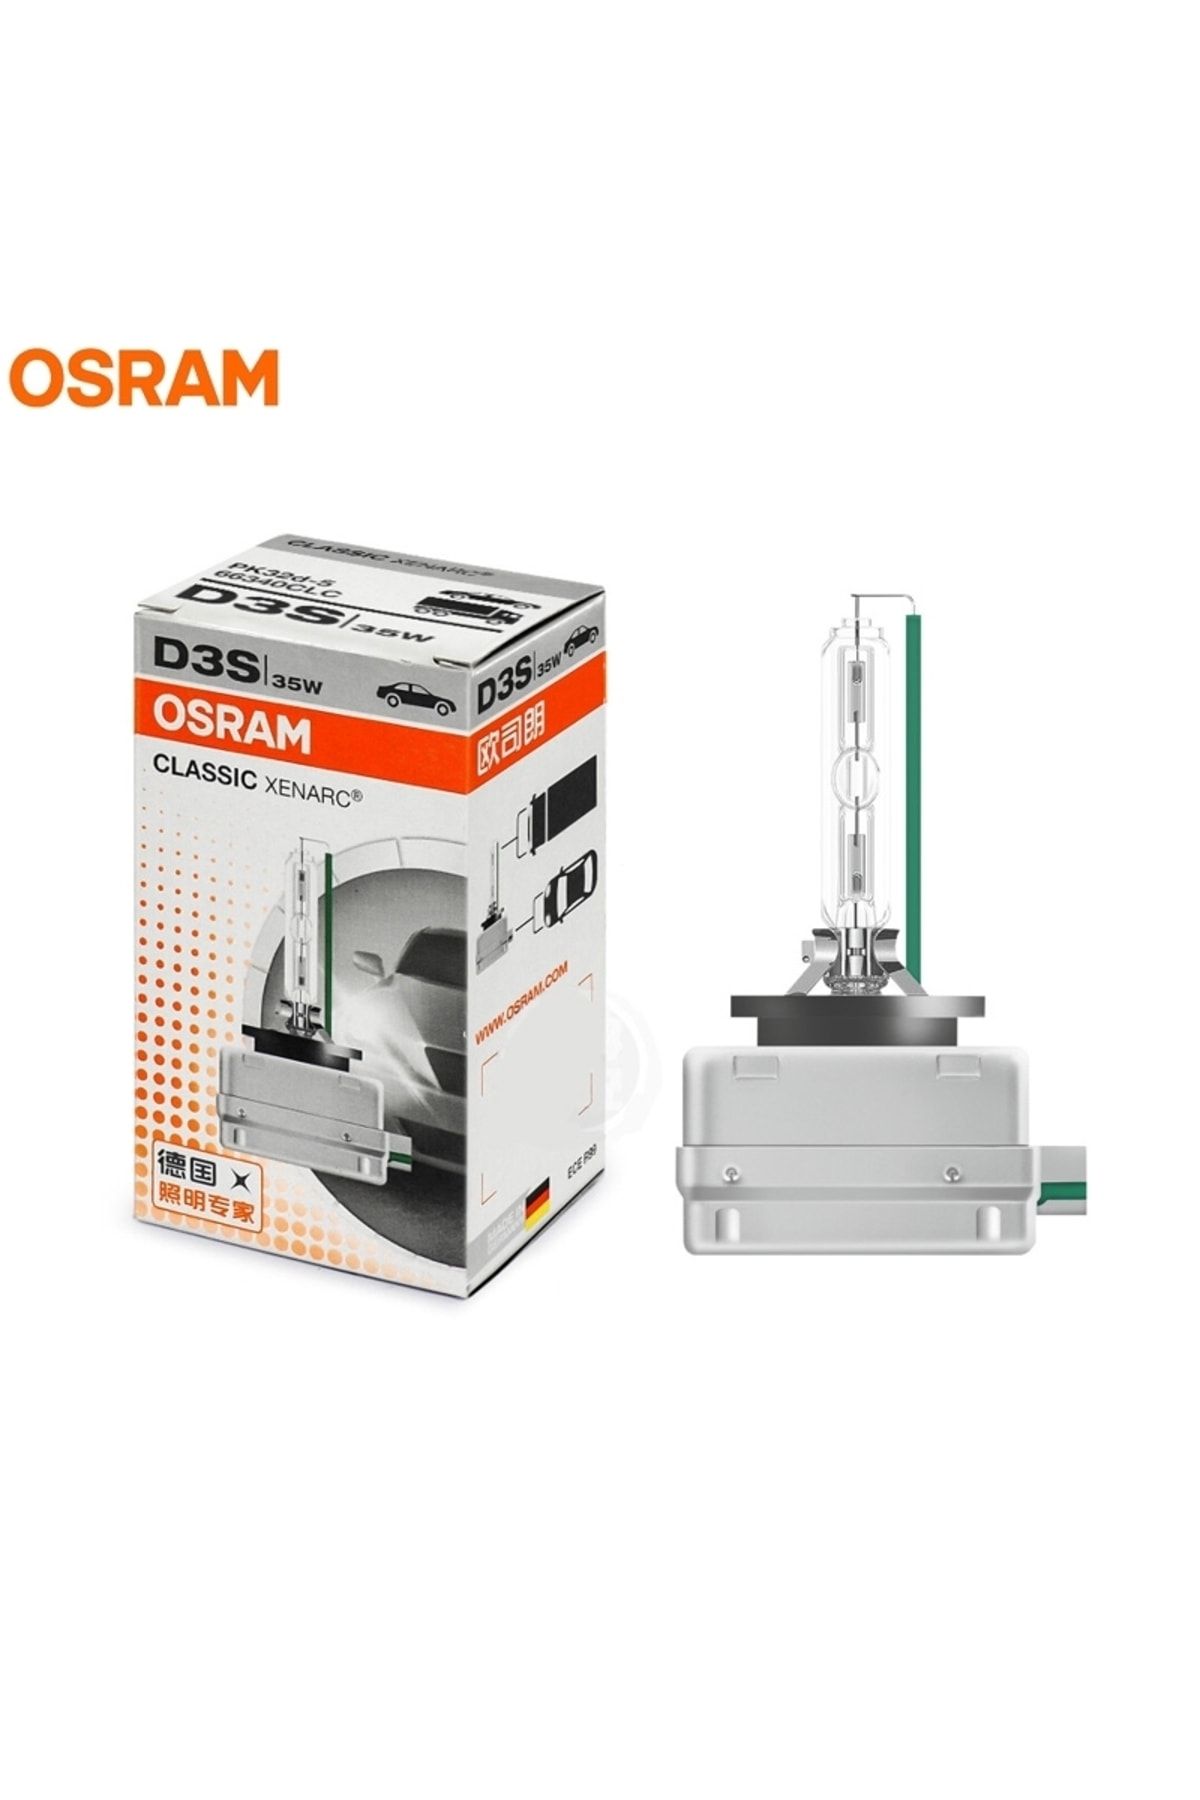 Osram D3s 12v 35w Xenon Far Ampulu 66340 Clc Fiyatı, Yorumları